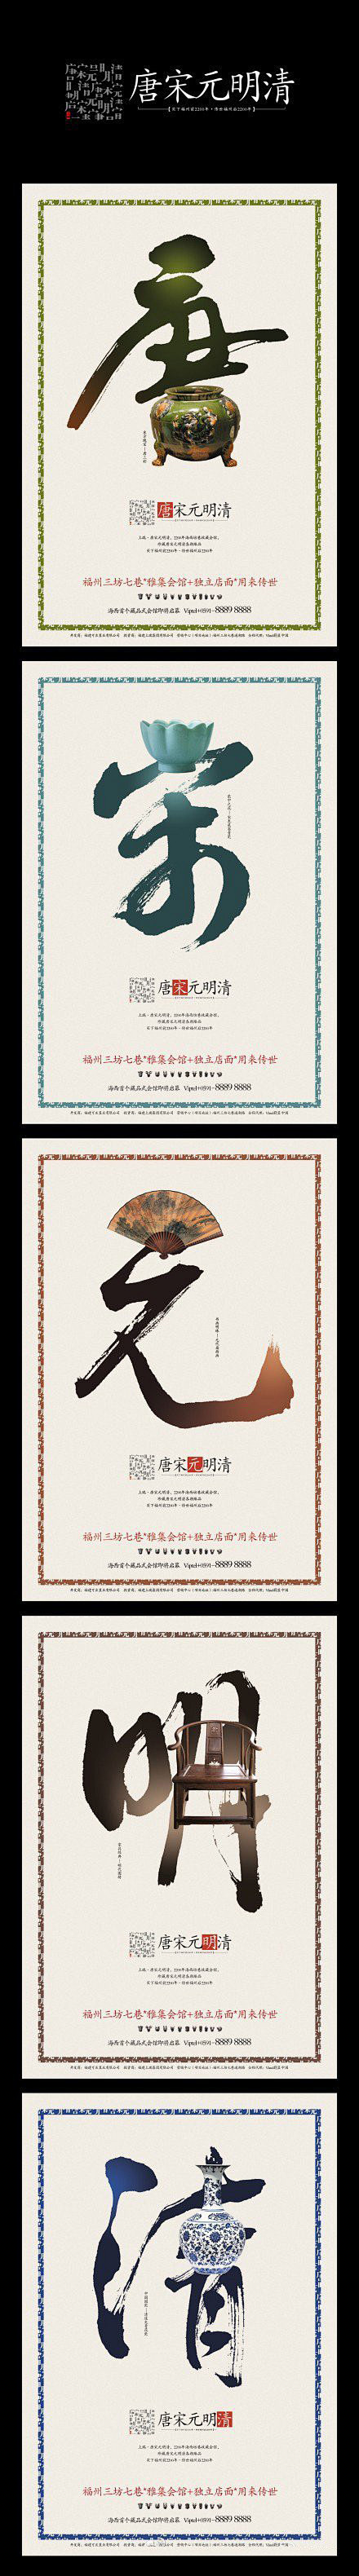 中国风创意海报